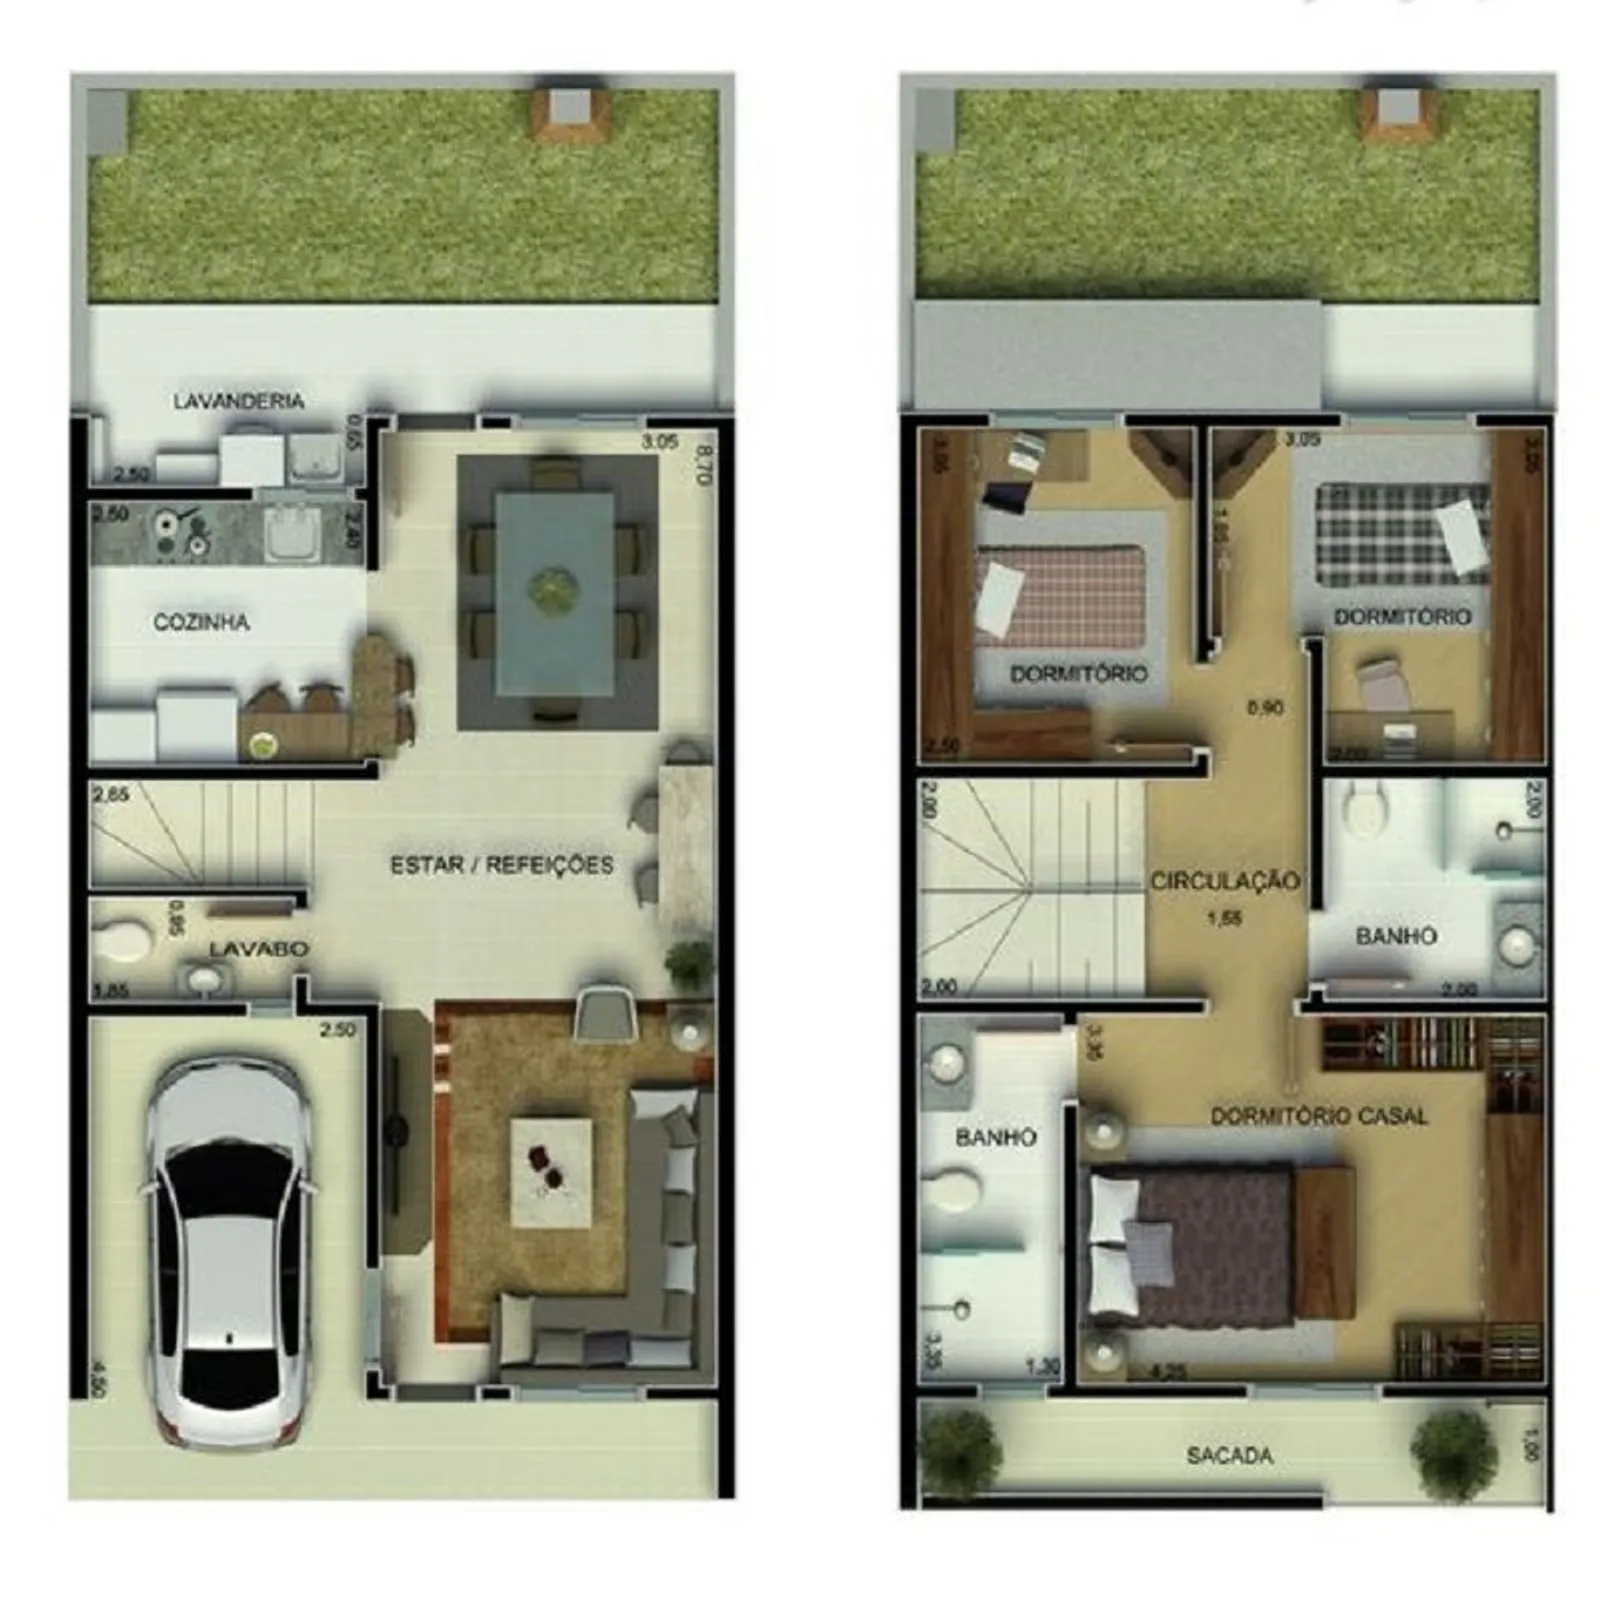 15 Desain Rumah Minimalis 2 Lantai, Cocok Buat Keluarga Baru